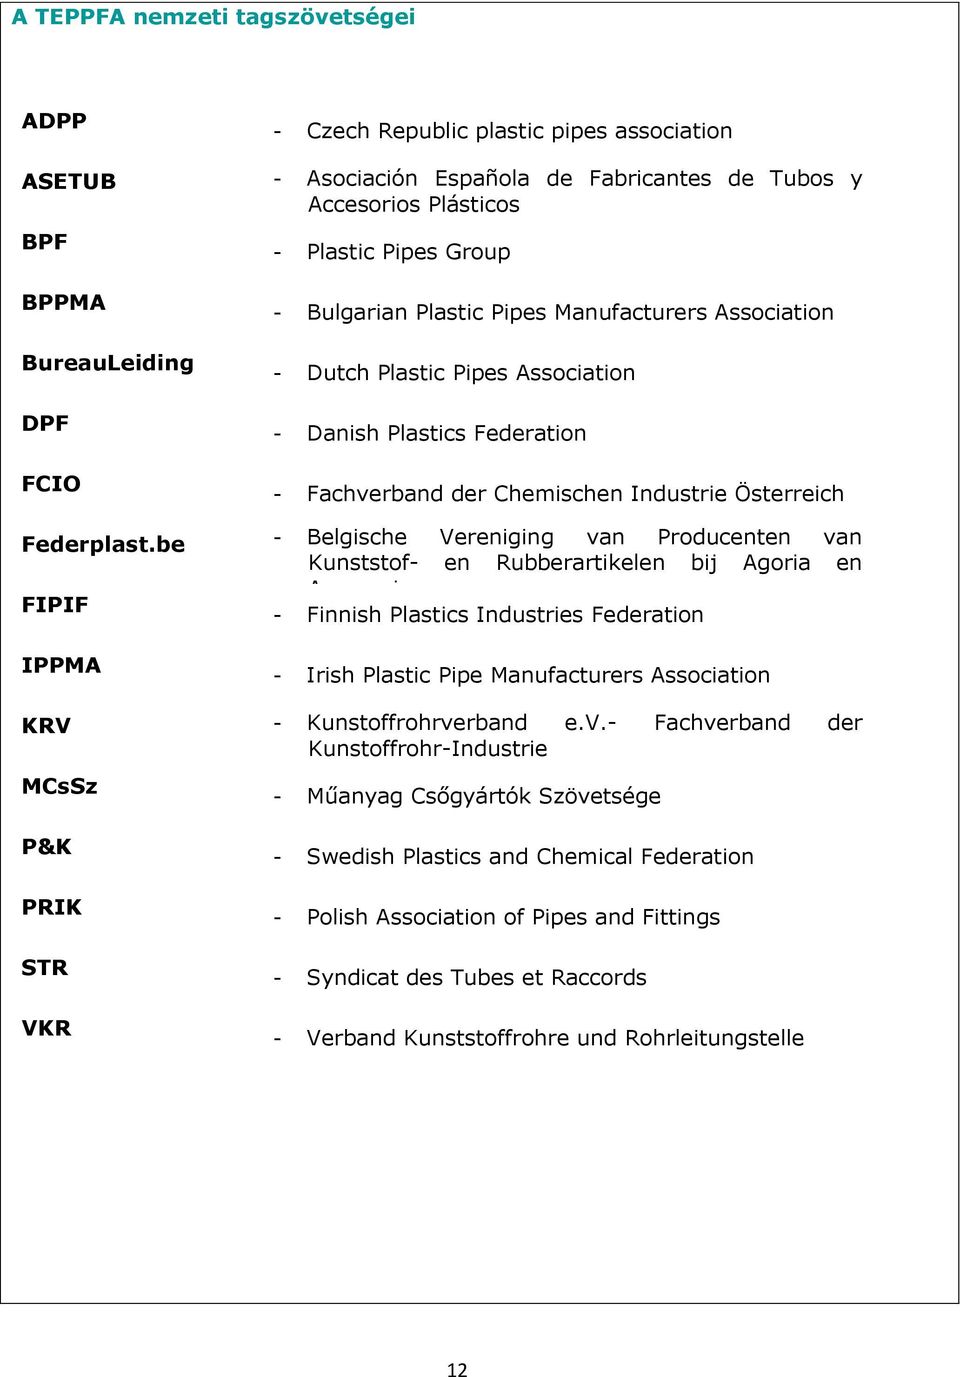 be - Belgische Vereniging van Producenten van Kunststof- en Rubberartikelen bij Agoria en Assenscia FIPIF - Finnish Plastics Industries Federation IPPMA - Irish Plastic Pipe Manufacturers Association